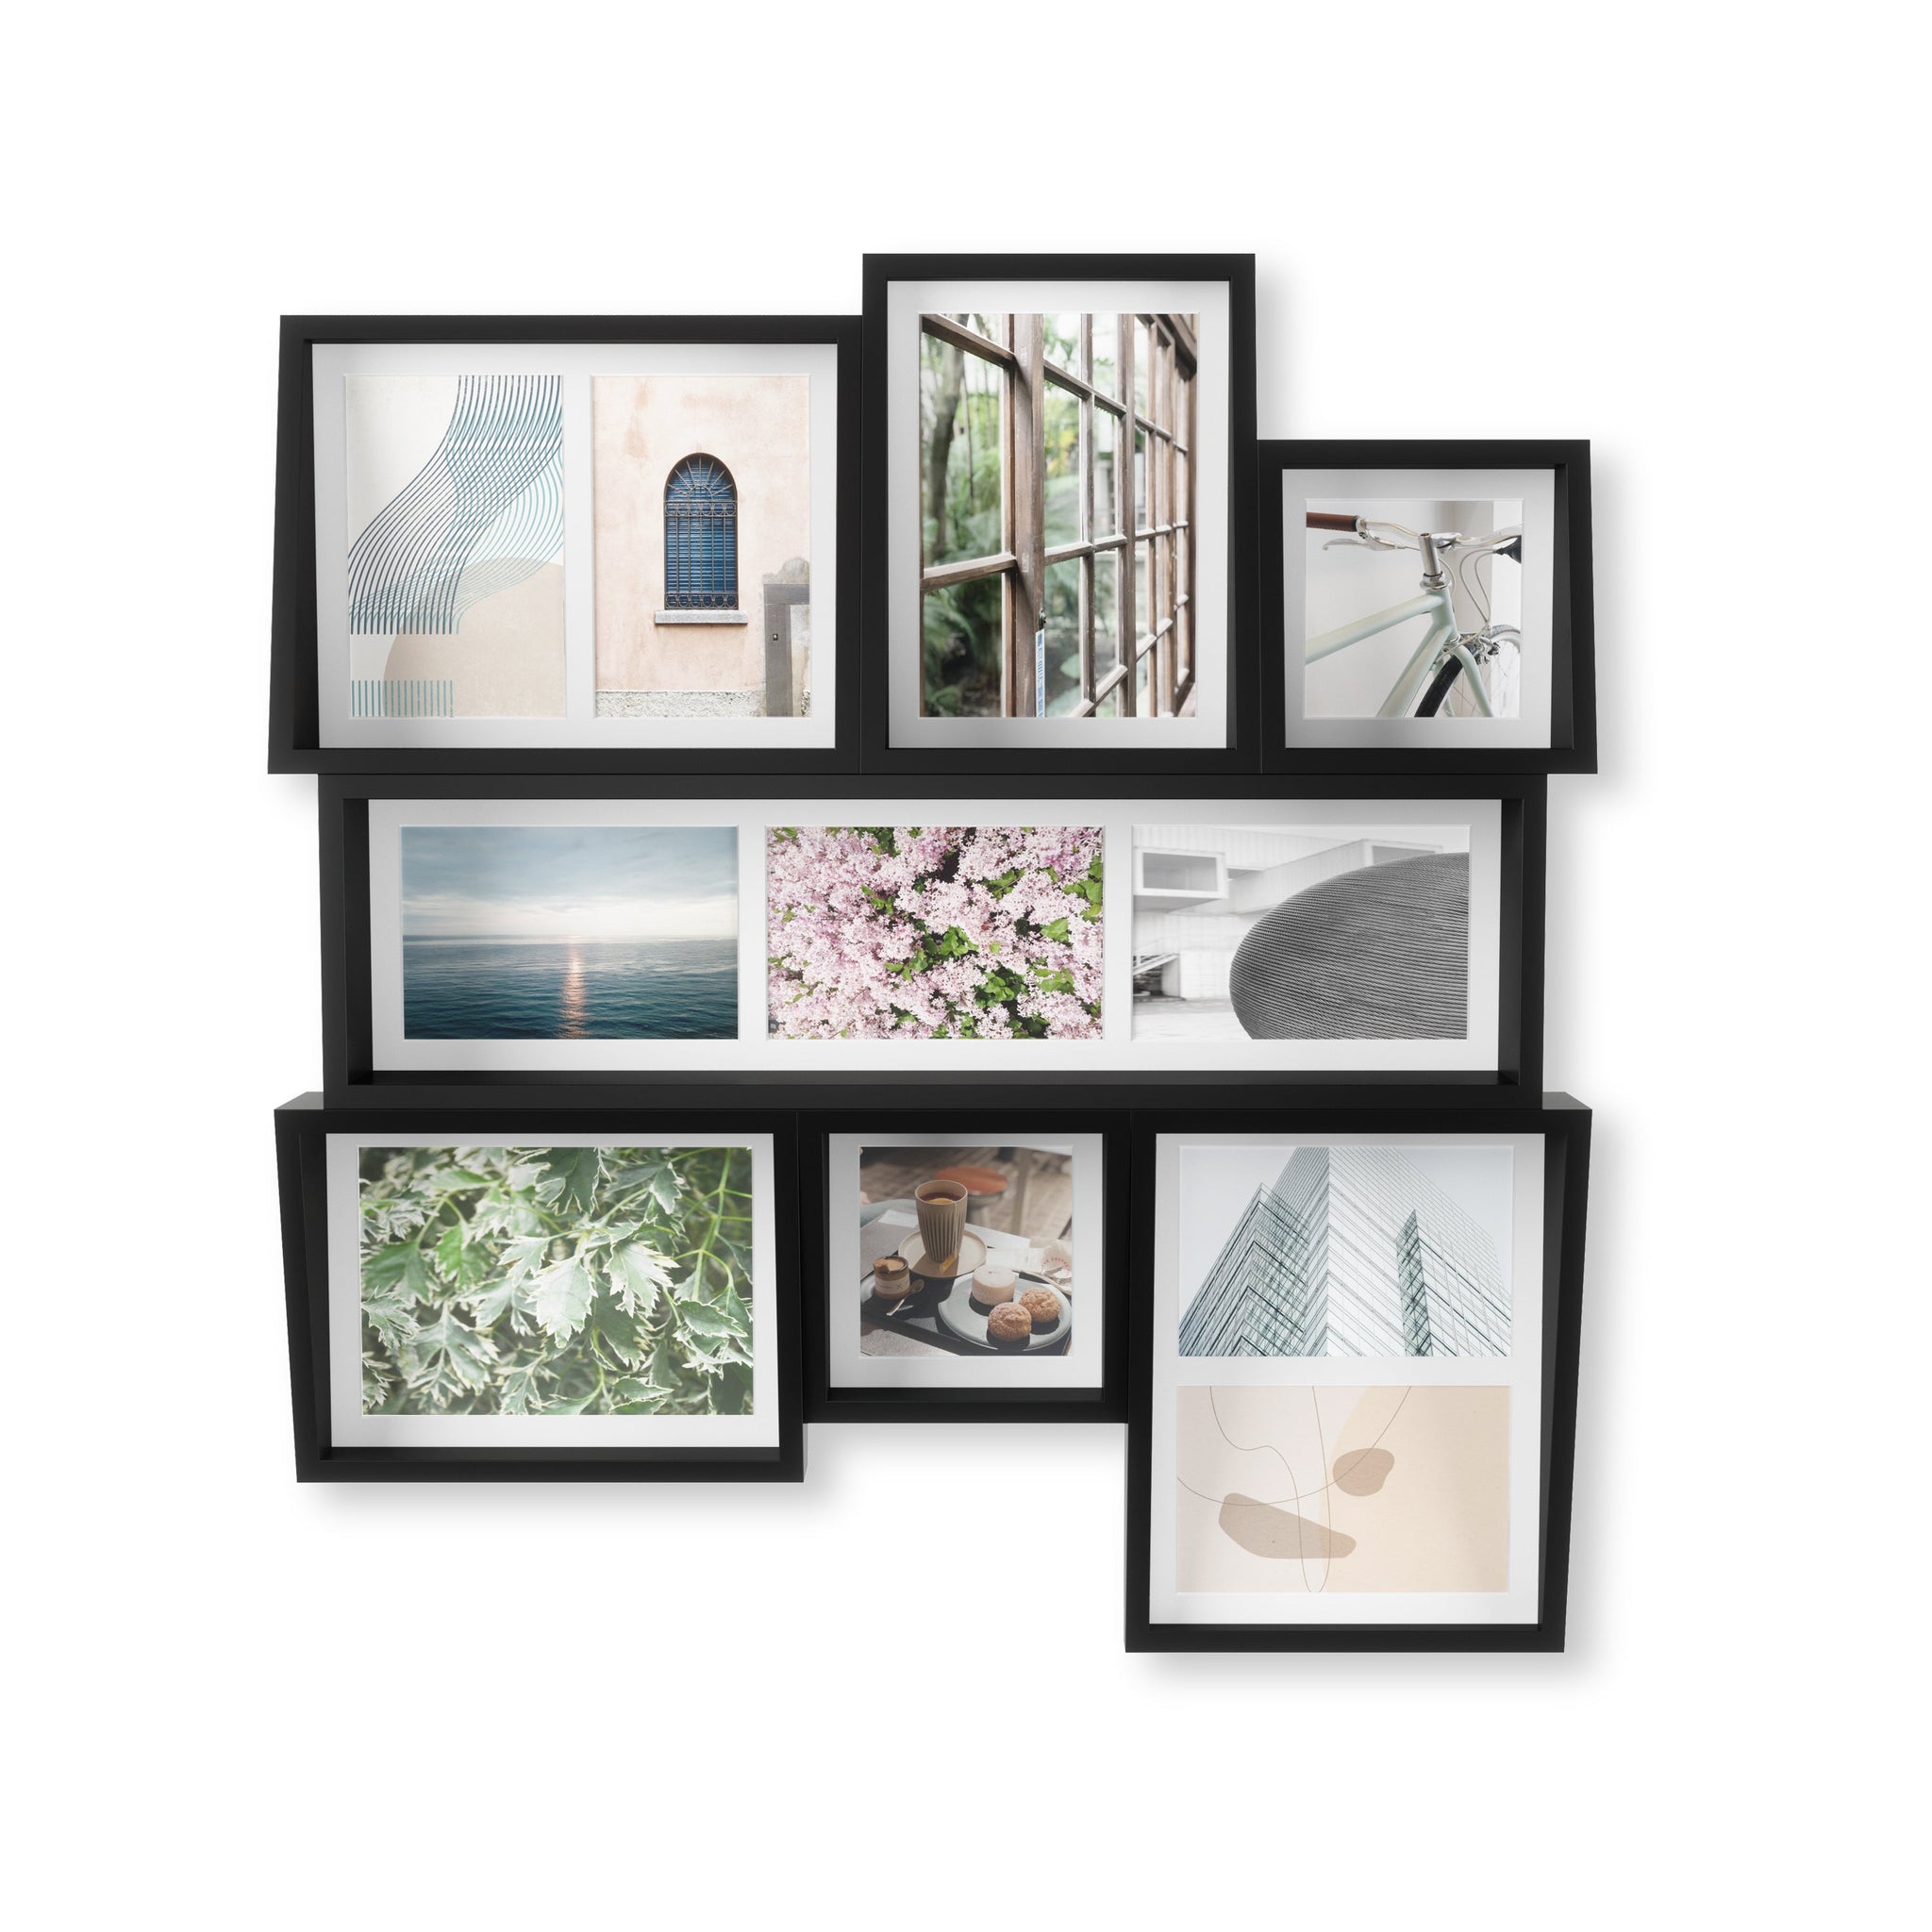 Edge Multi-Photo Wall Display